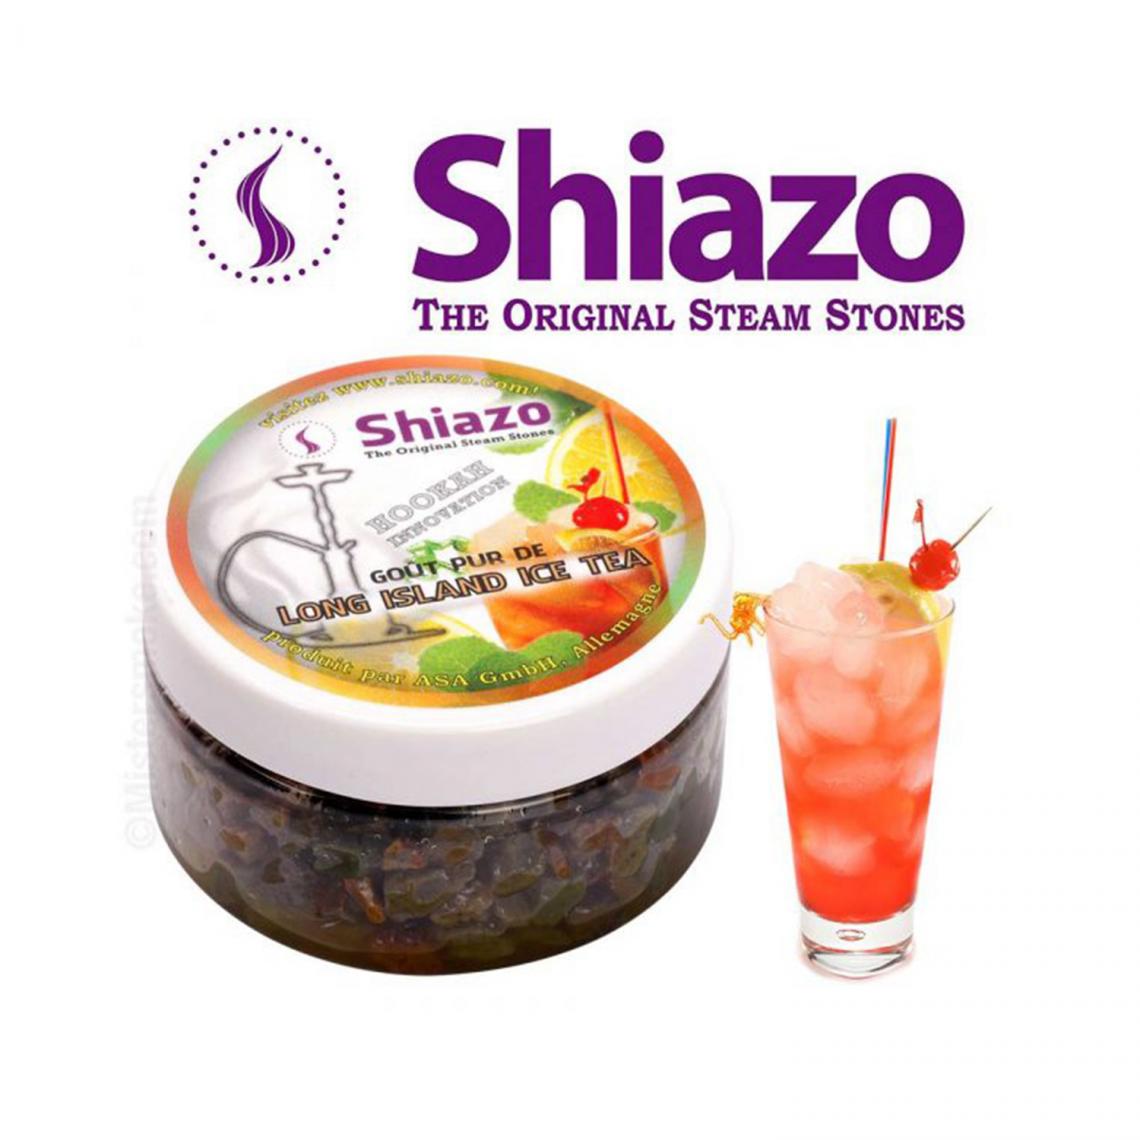 Shiazo - Pierre à vapeur - Shiazo - Long island iced tea - boite de 100g pour chicha /narguilé - Cendriers